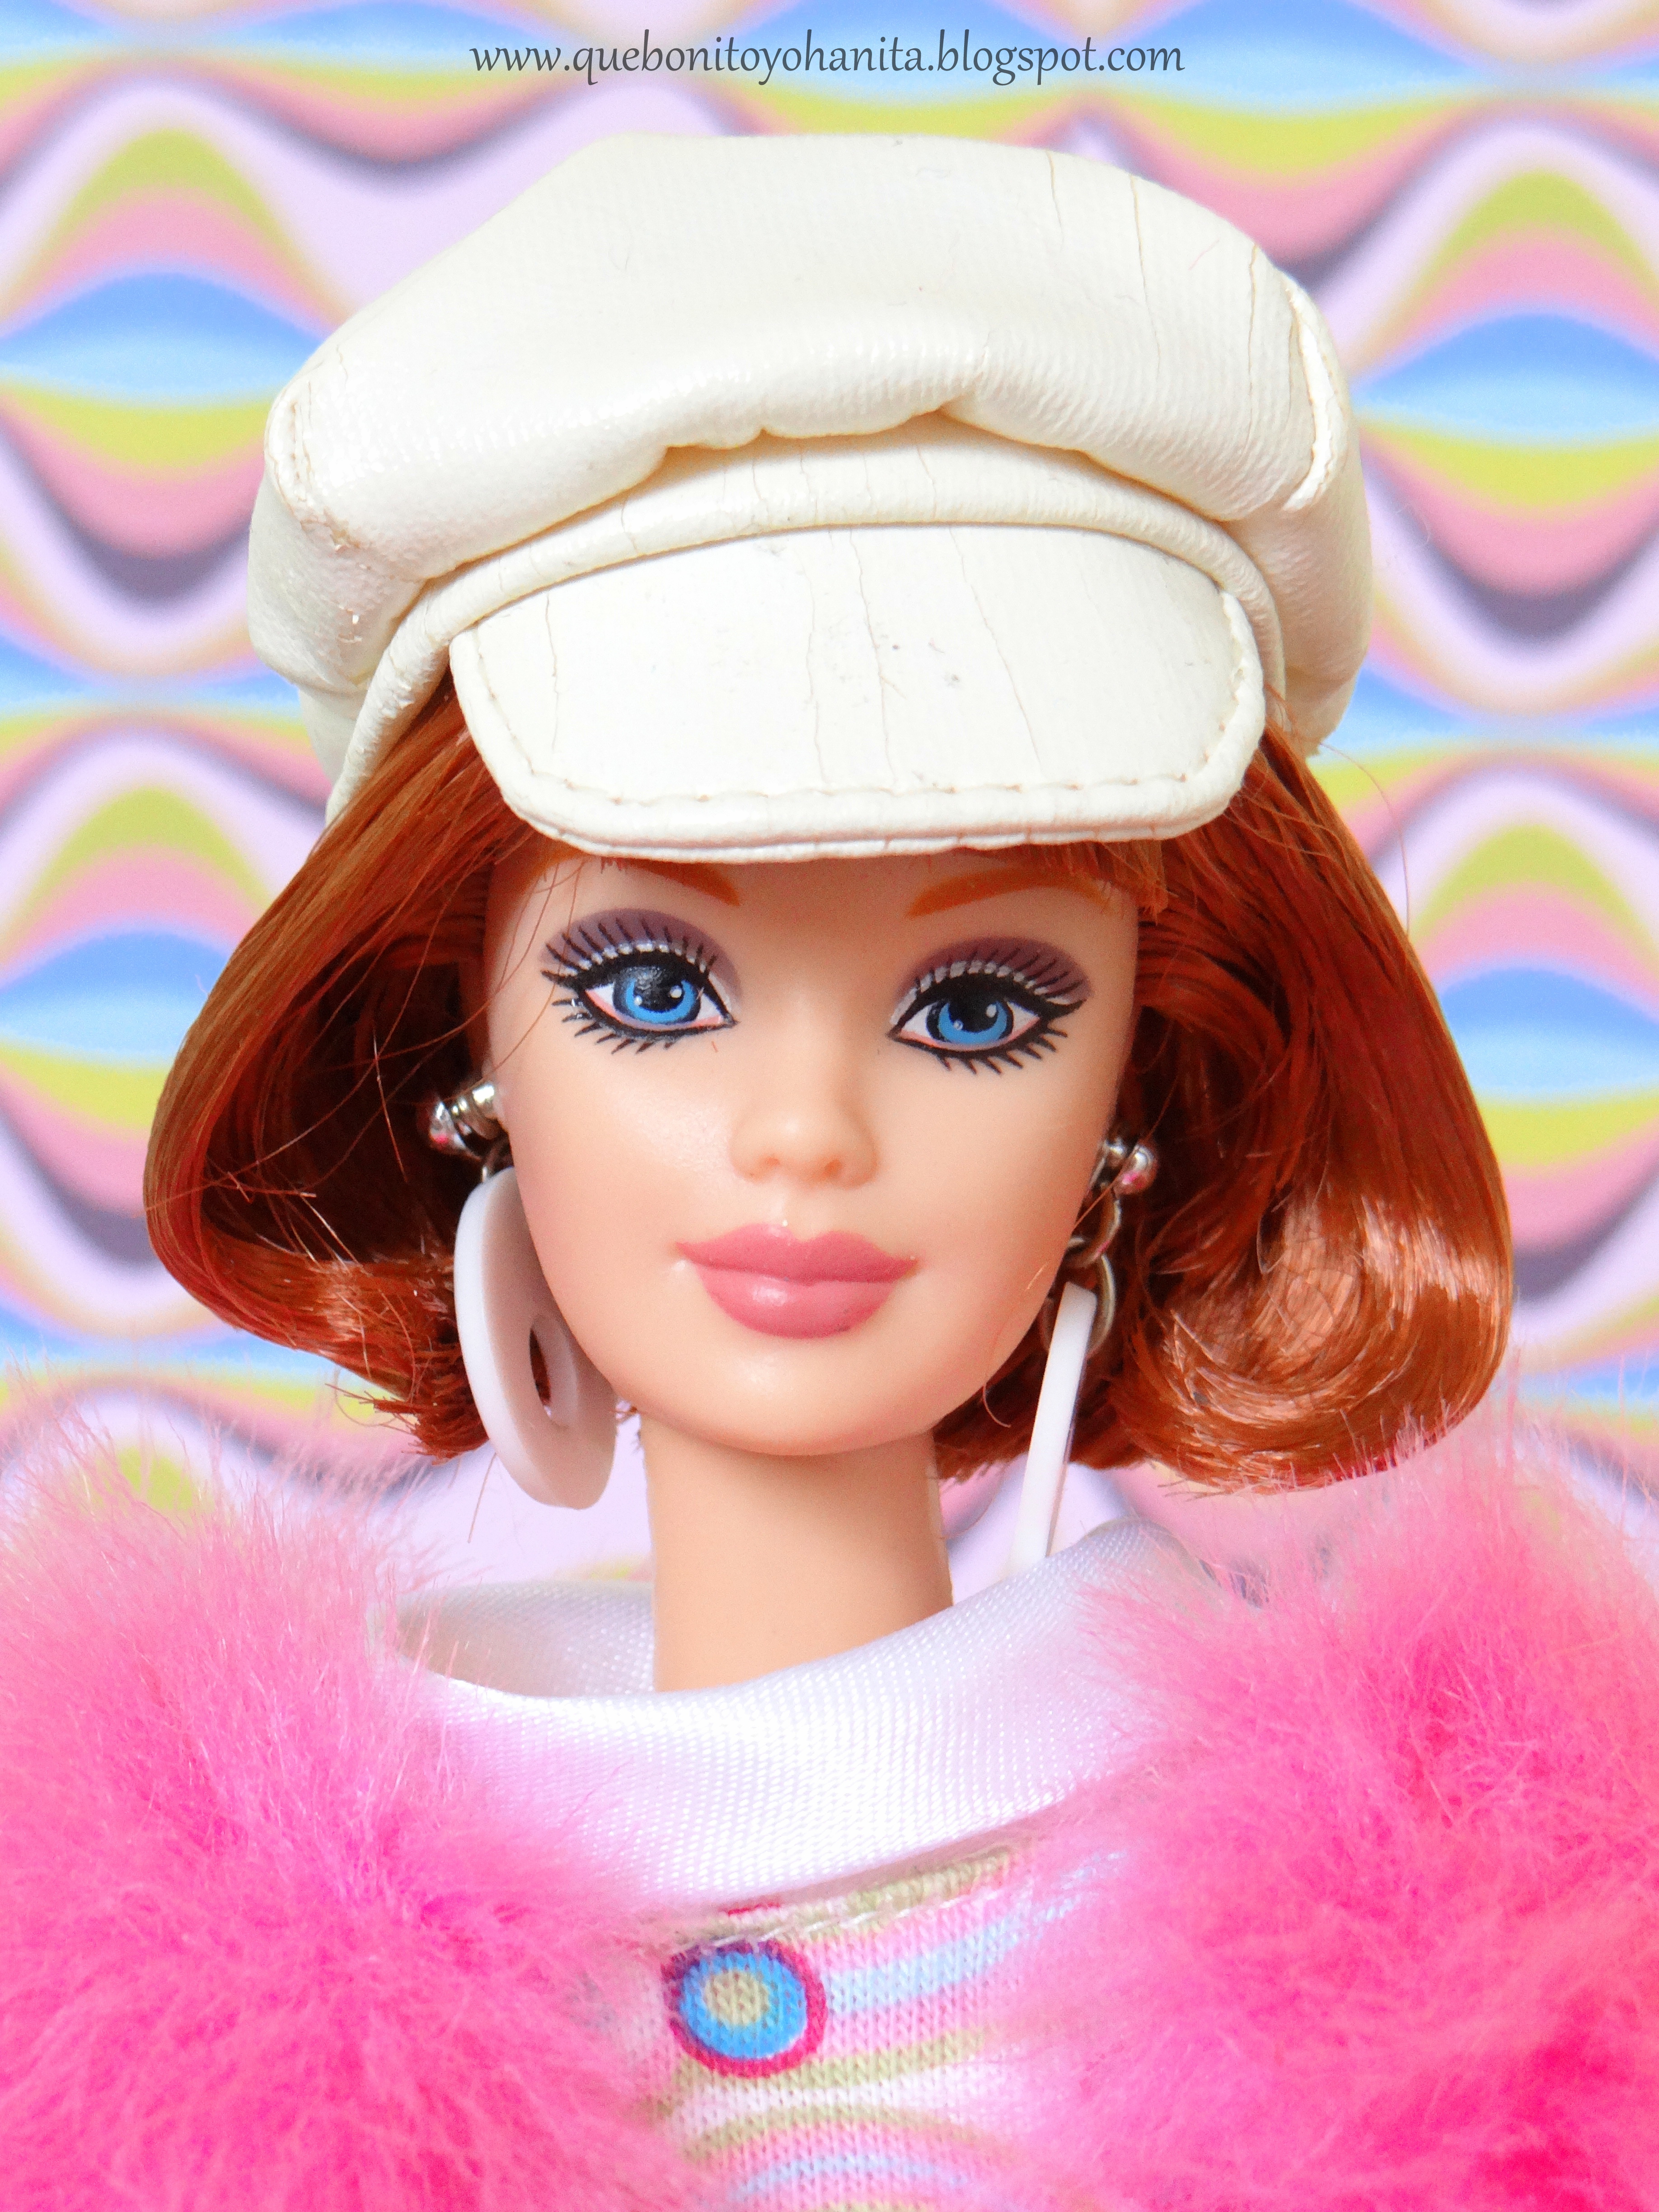 maak het plat Elastisch Voorvoegsel que bonito Yohanita!: Barbie Groovy 60's